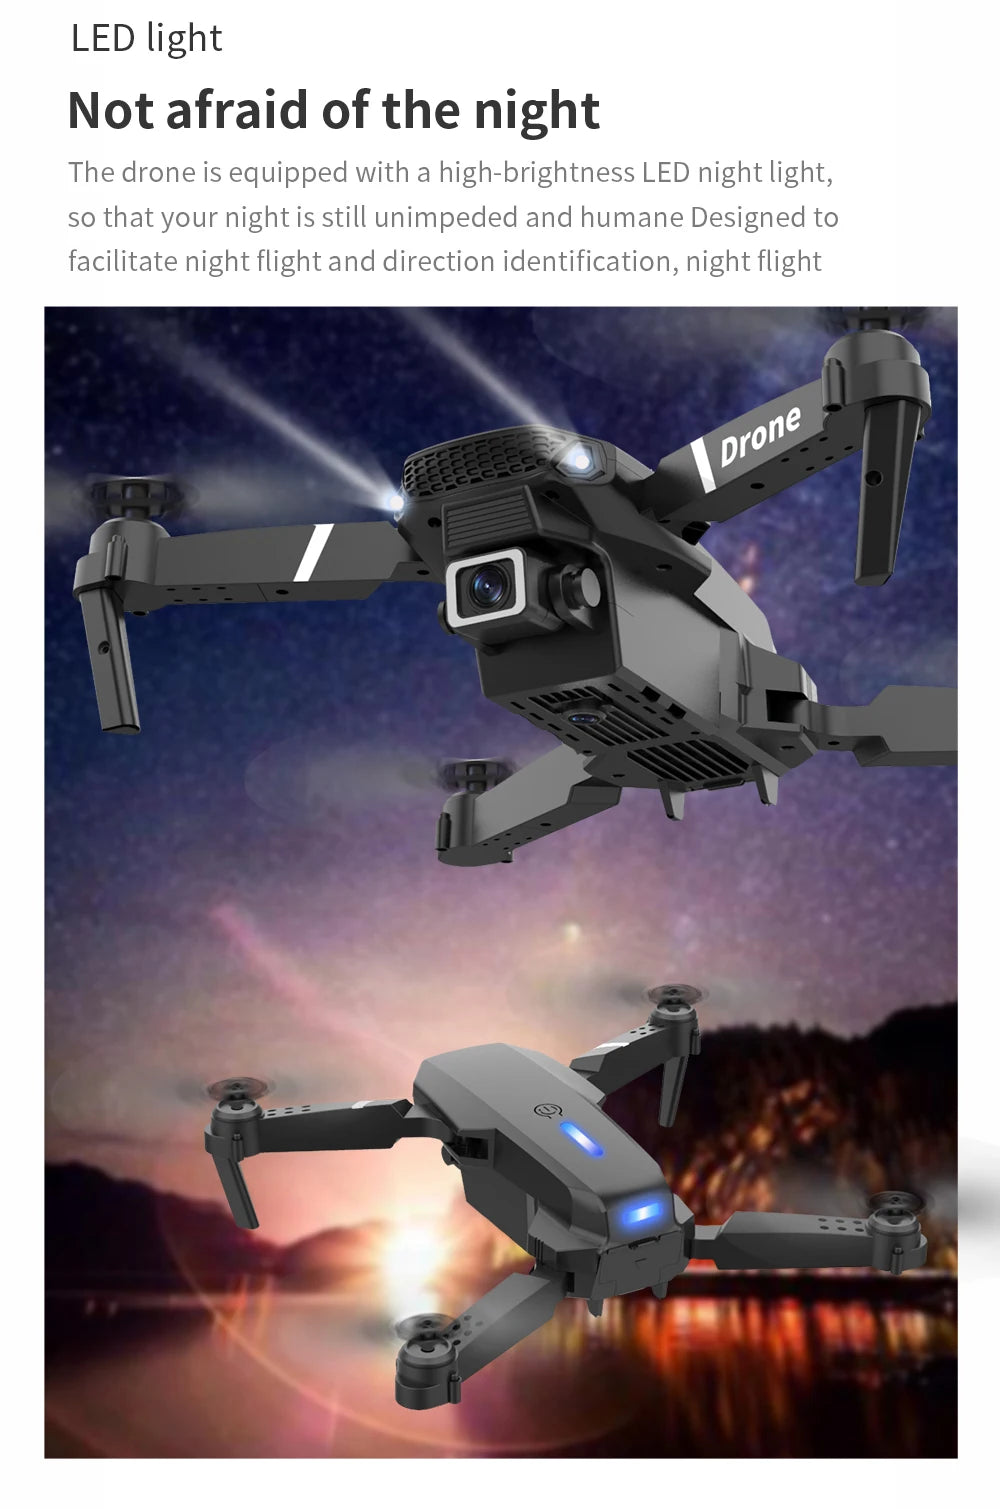 Professional Drone E88 4k wide-angle HD camera